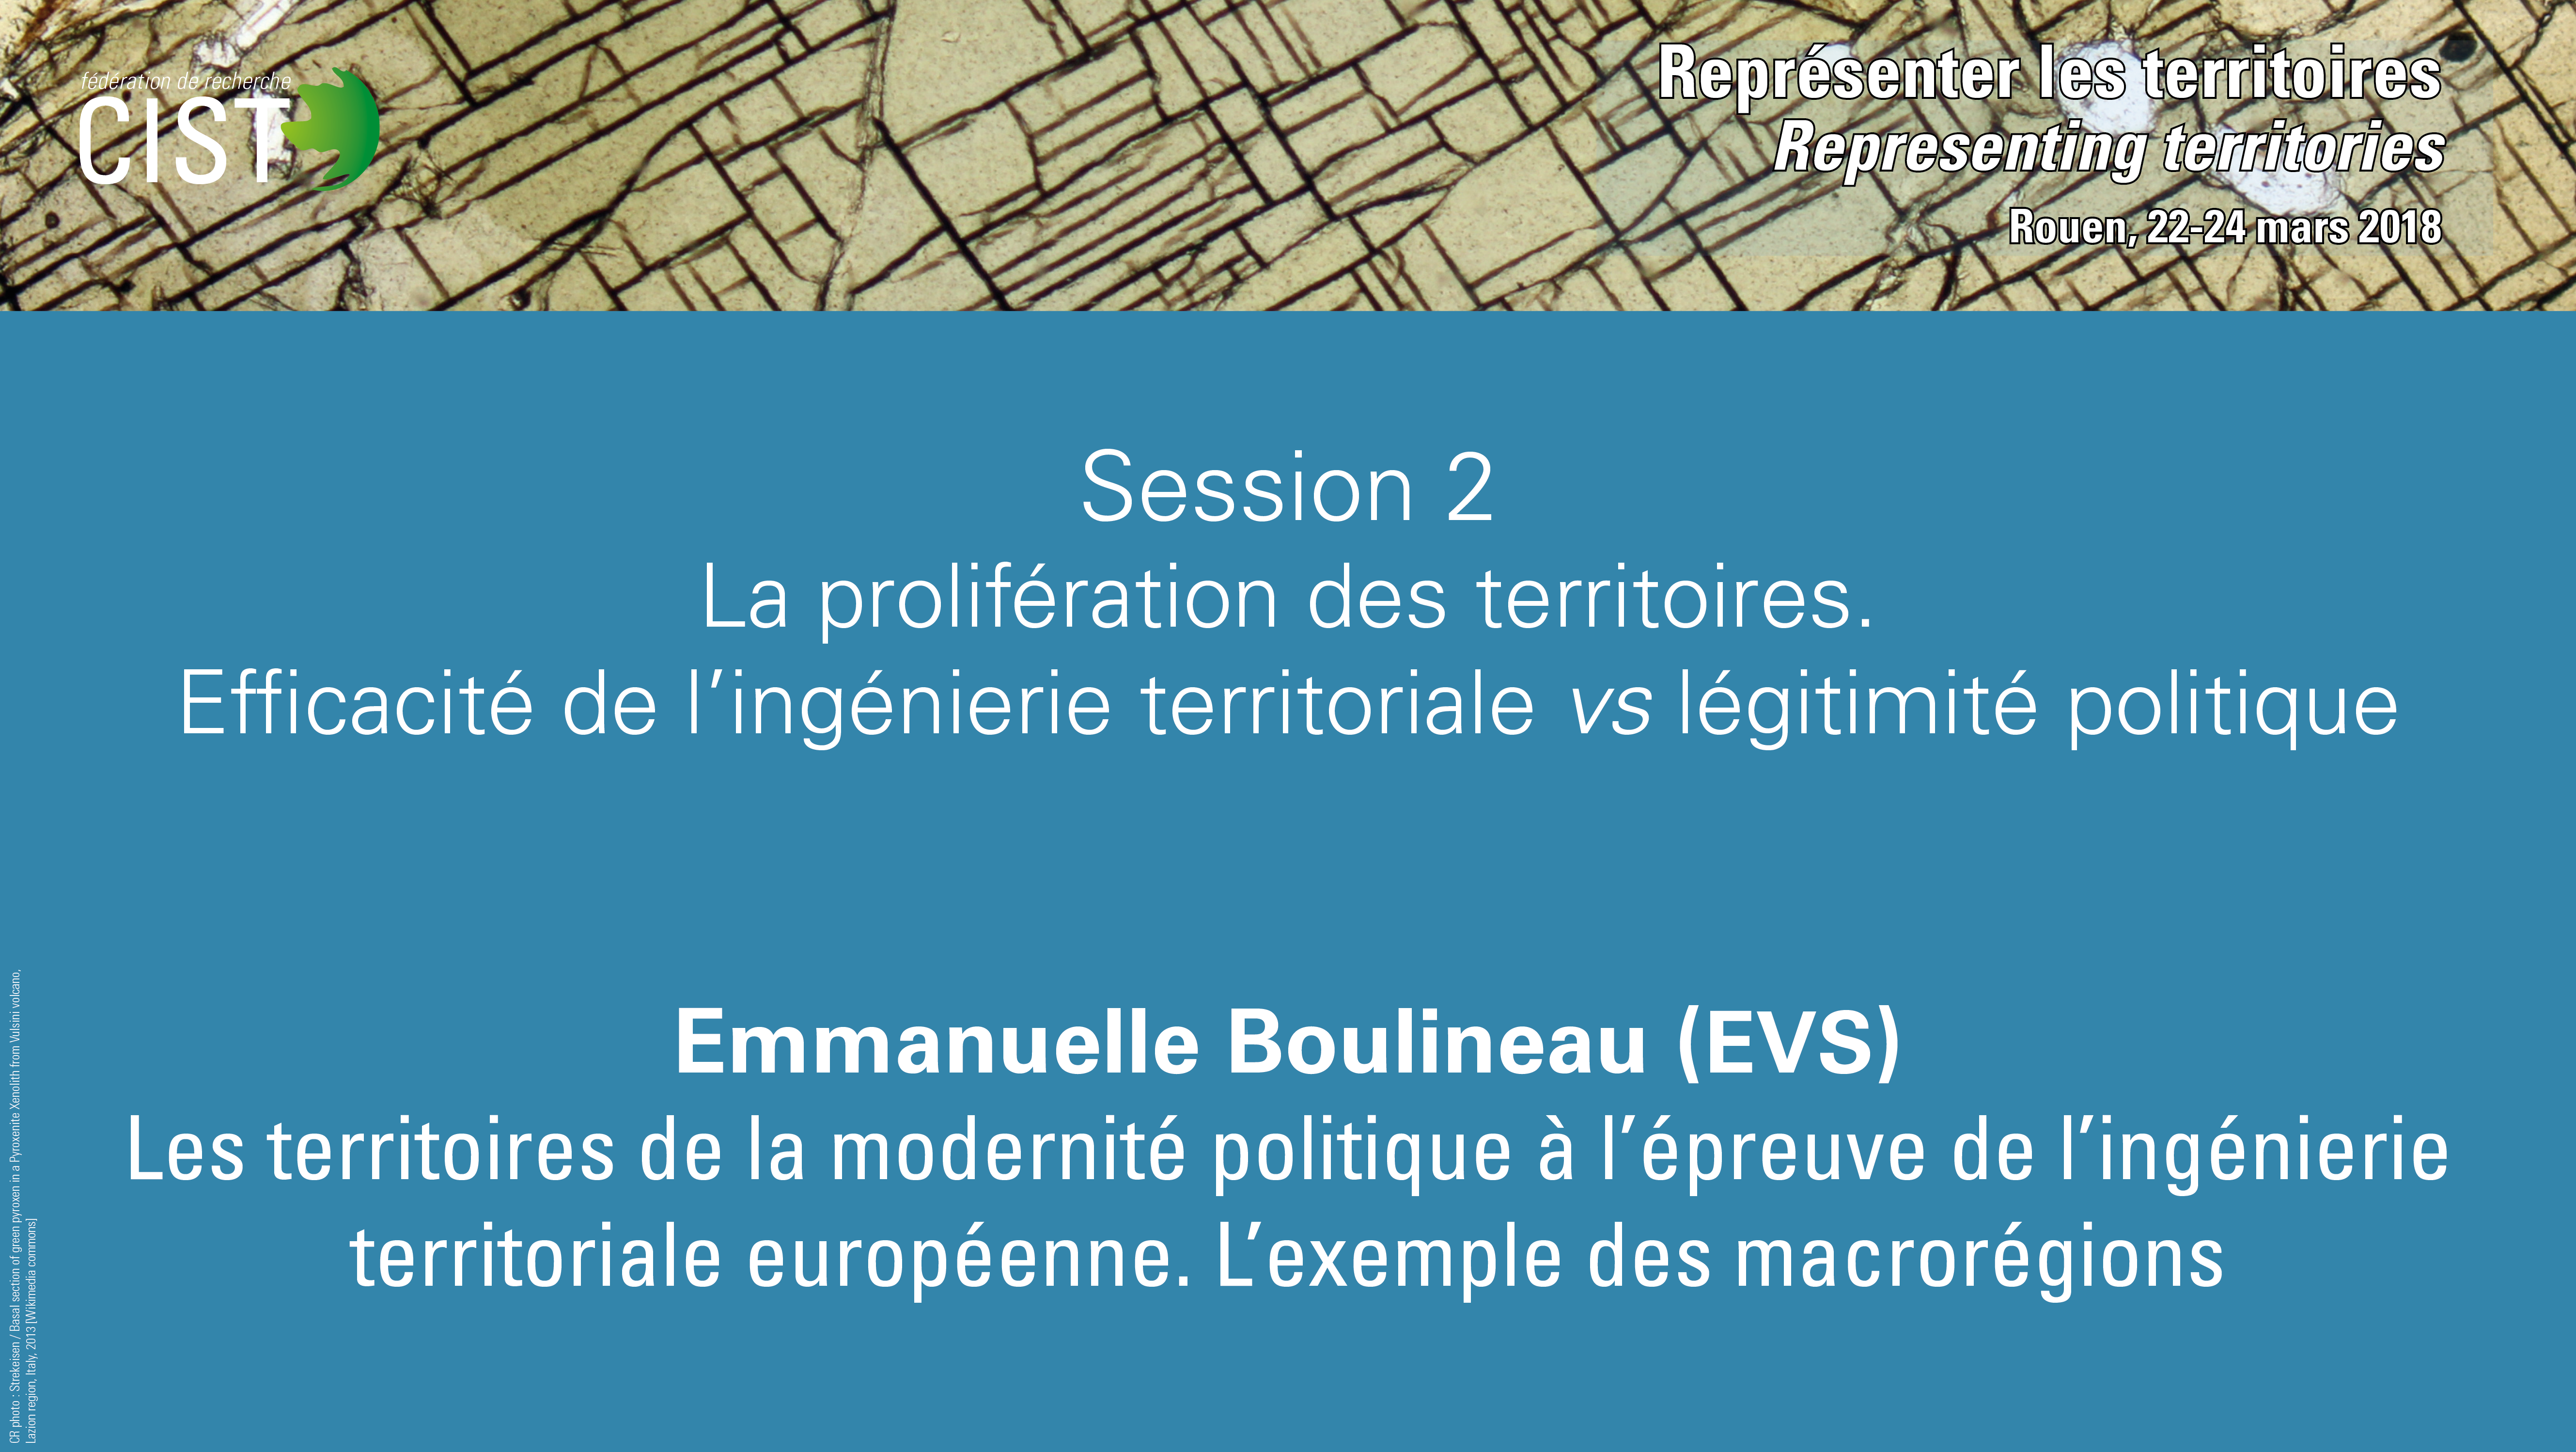 Emmanuelle Boulineau - Les territoires de la modernité politique à l'épreuve de l'ingénierie territoriale européenne. L'exemple des macrorégions